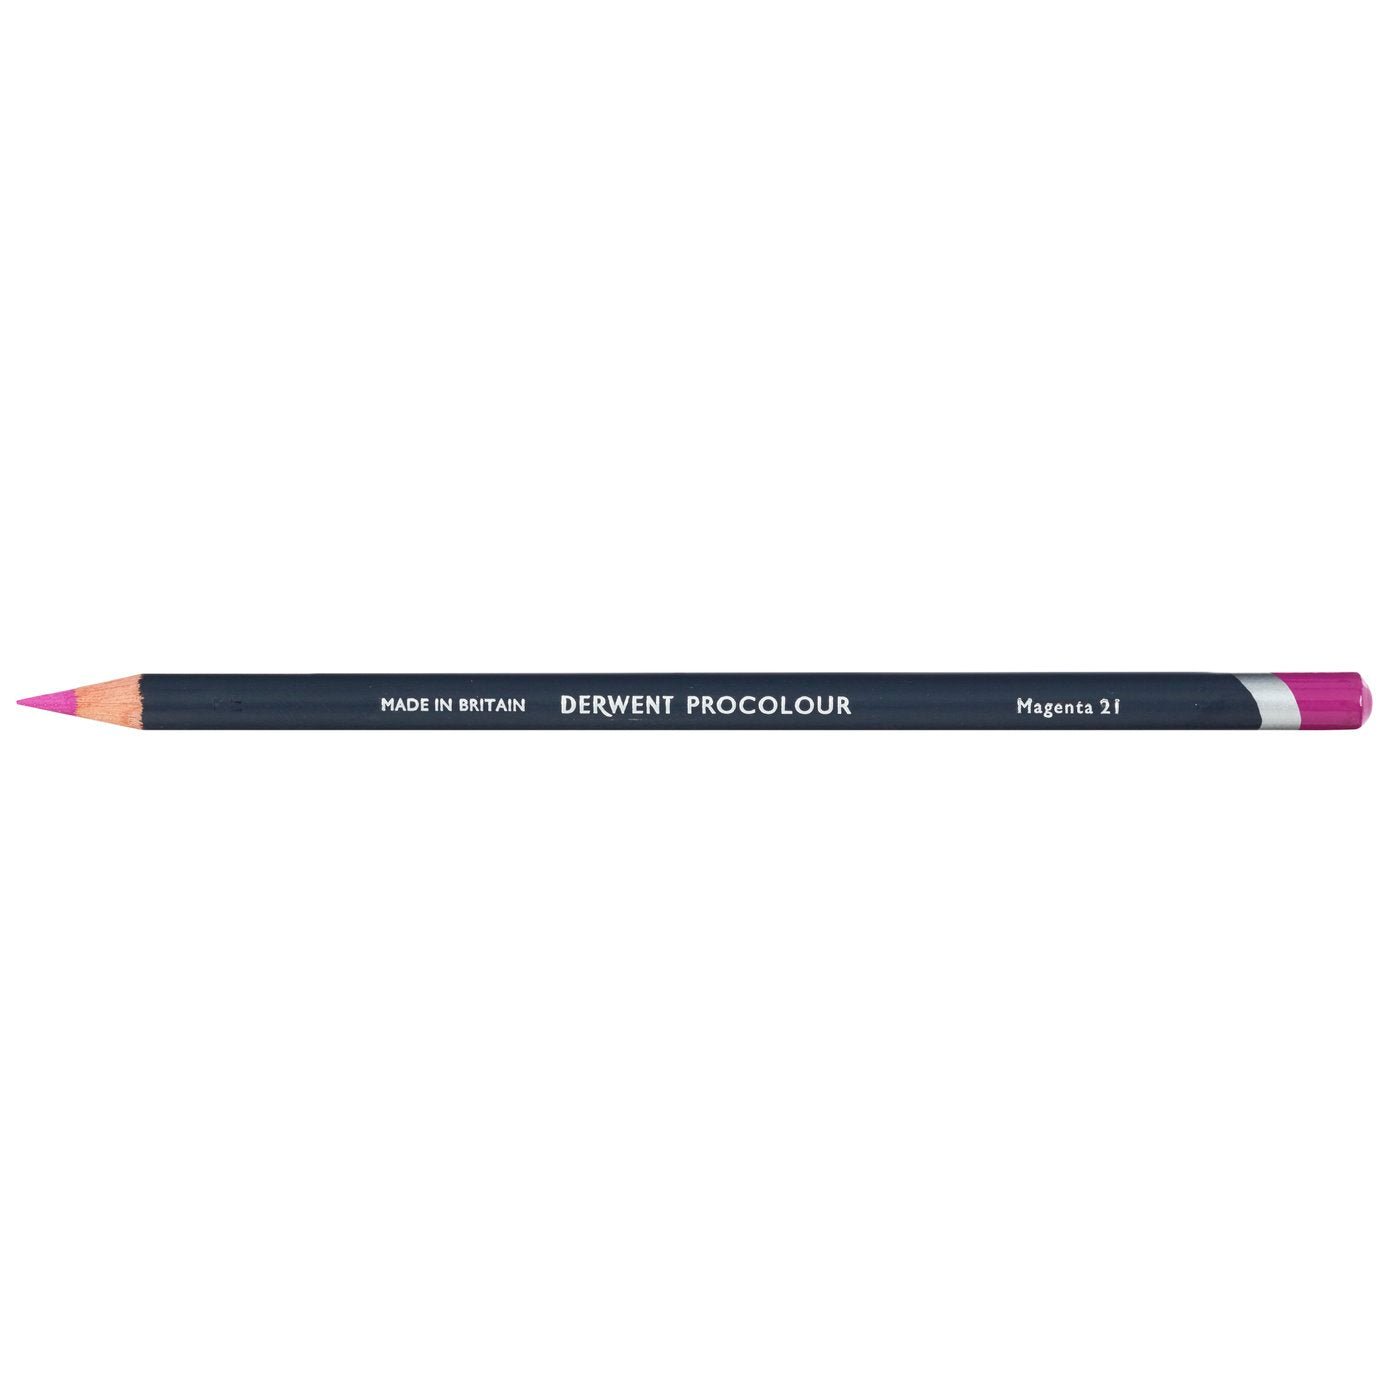 Derwent Procolour Pencil Magenta 21 - theartshop.com.au